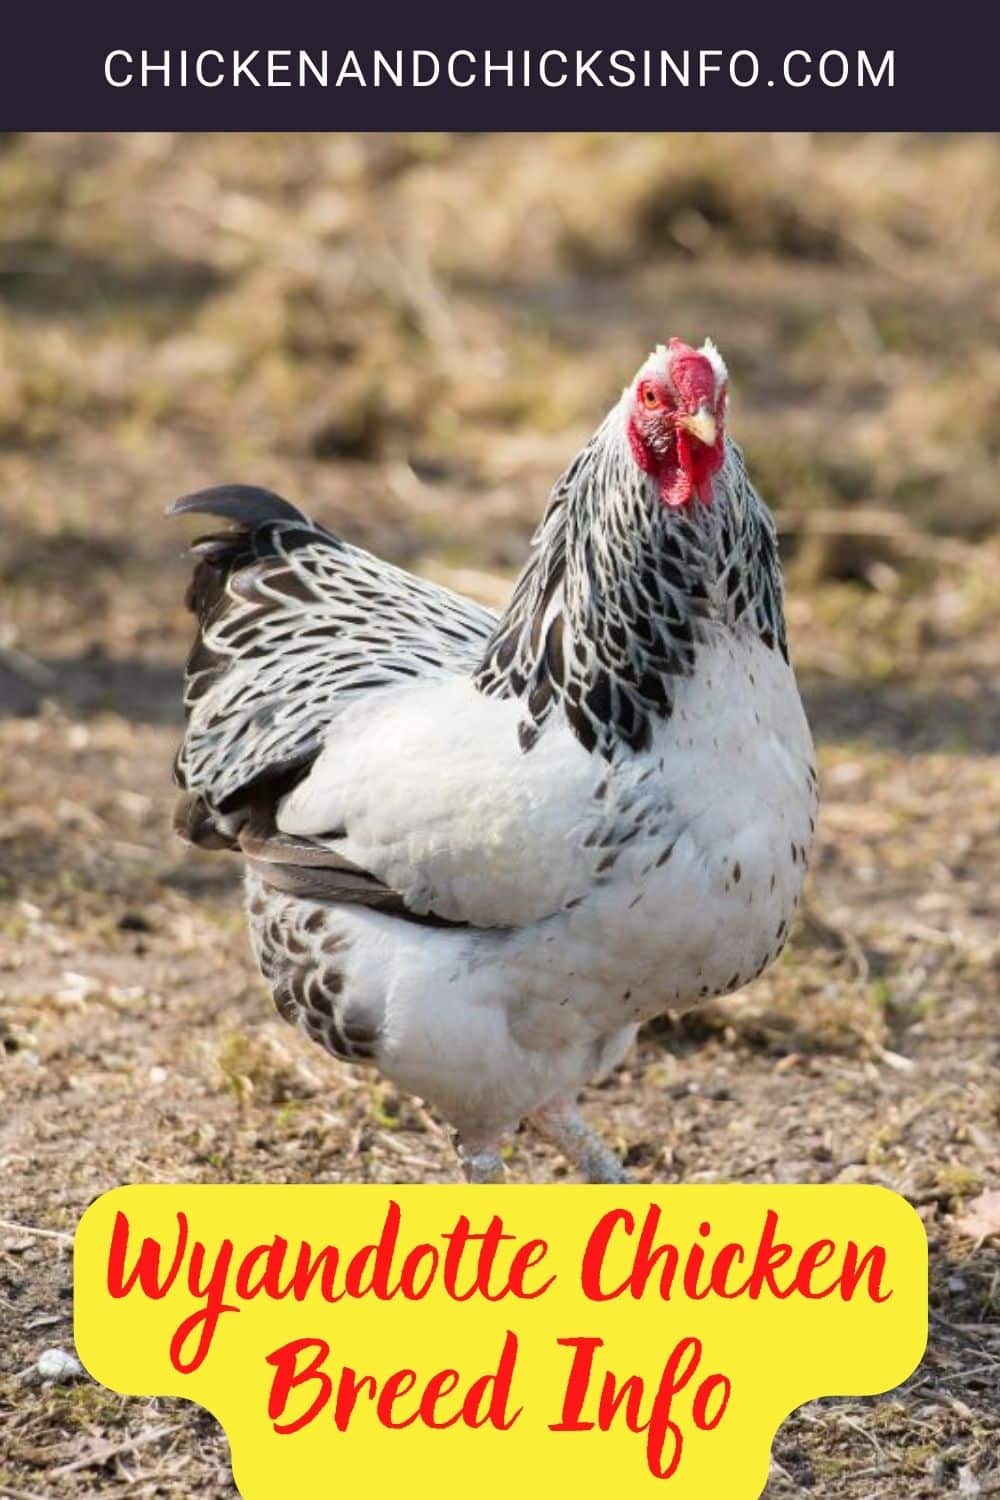 Wyandotte Chicken Breed Info Pinterest image.